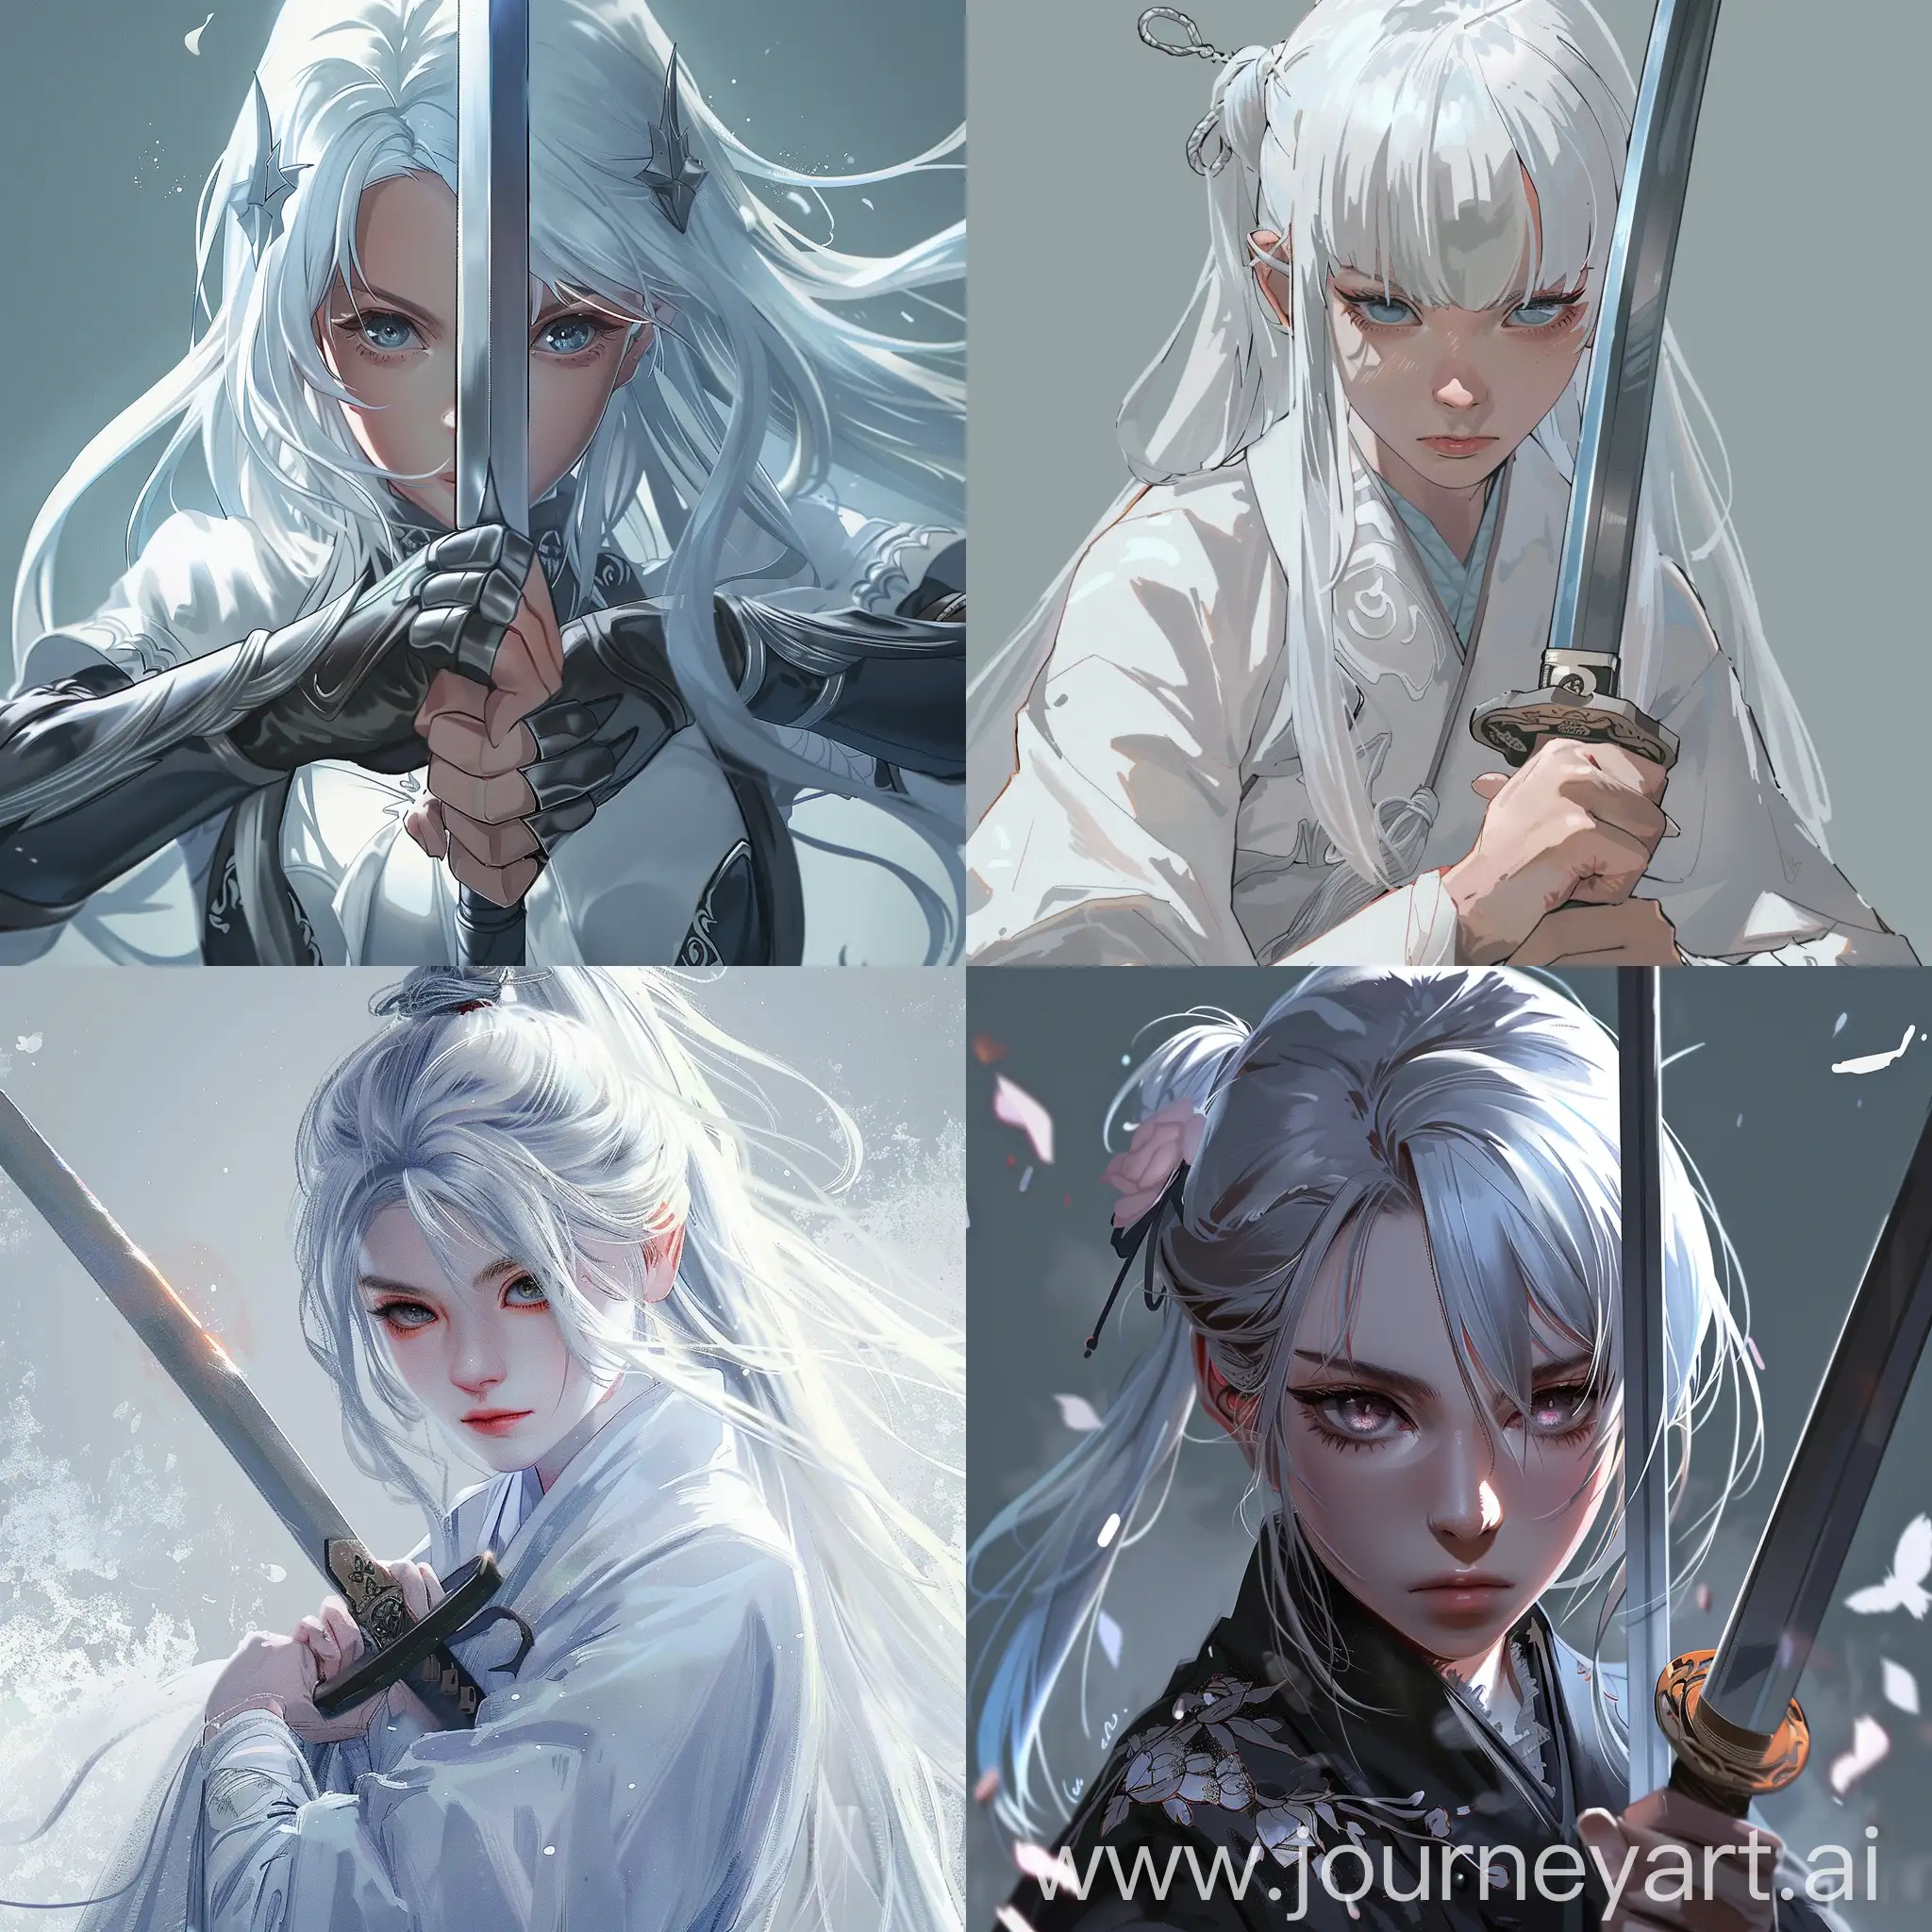 Anime-Girl-with-White-Hair-Holding-Sword-Fantasy-Art